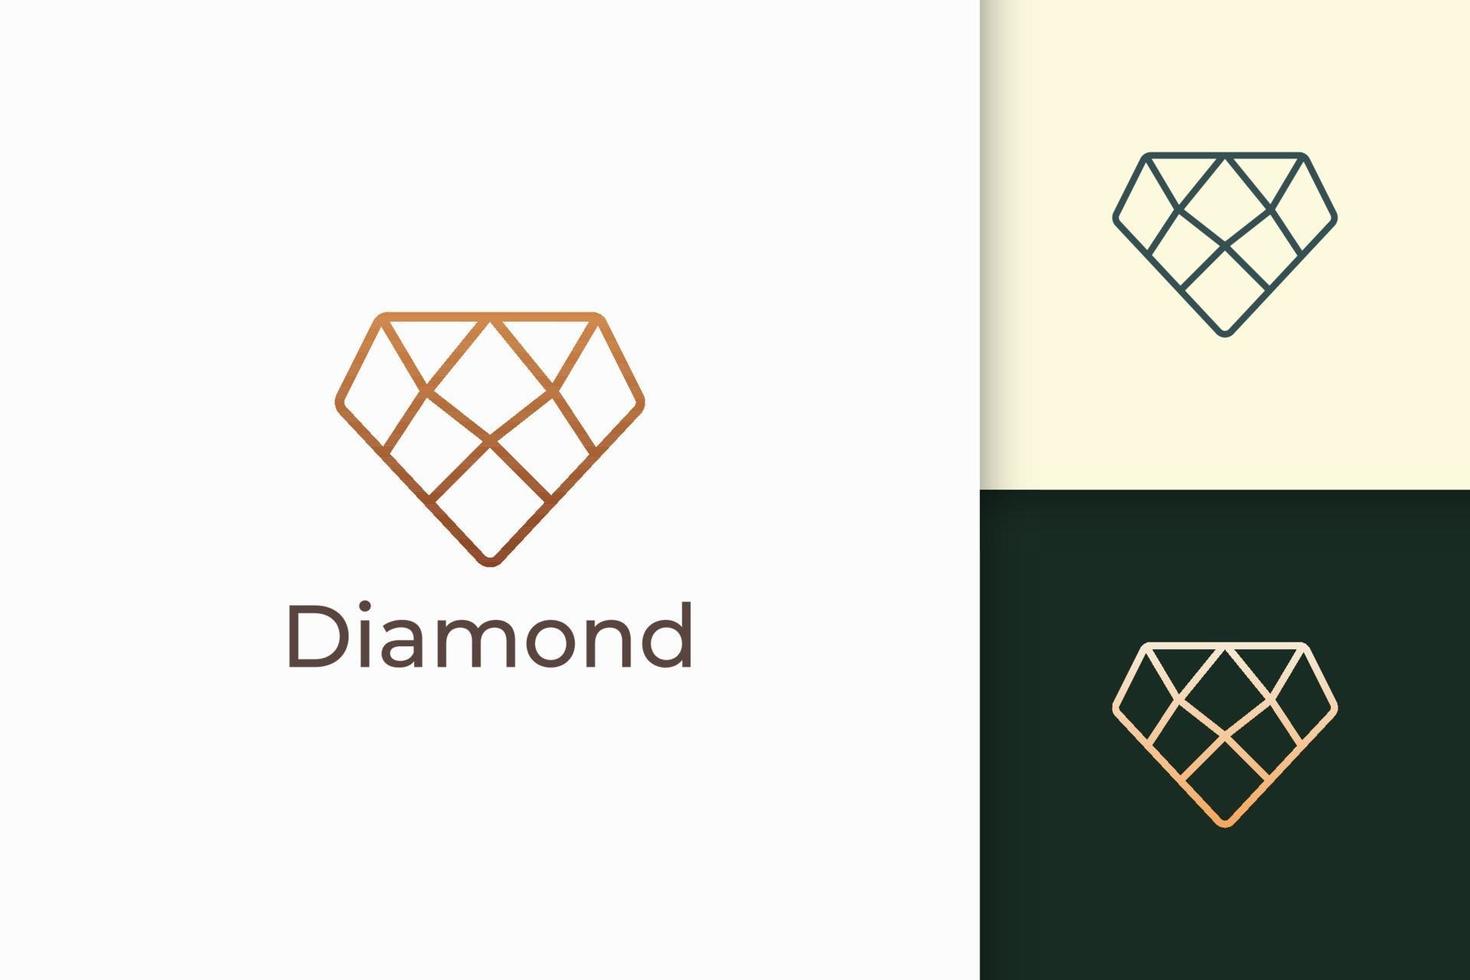 joia de luxo ou logotipo de joia em forma de diamante com cor dourada vetor